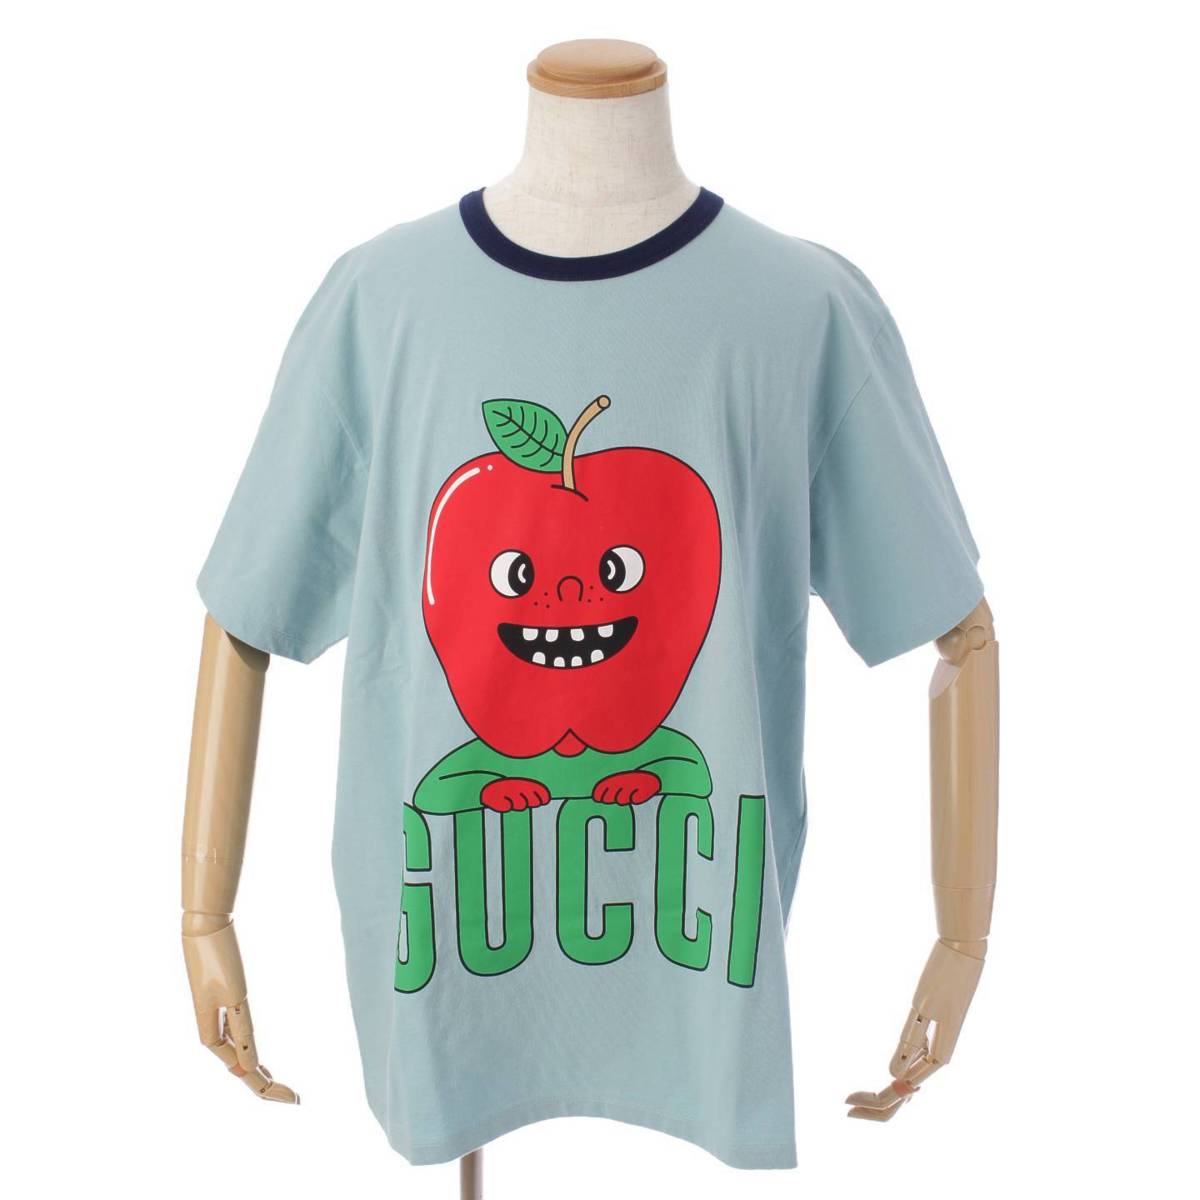 グッチ(Gucci) アップルプリント オーバーサイズ Tシャツ トップス 703439 ブルー L